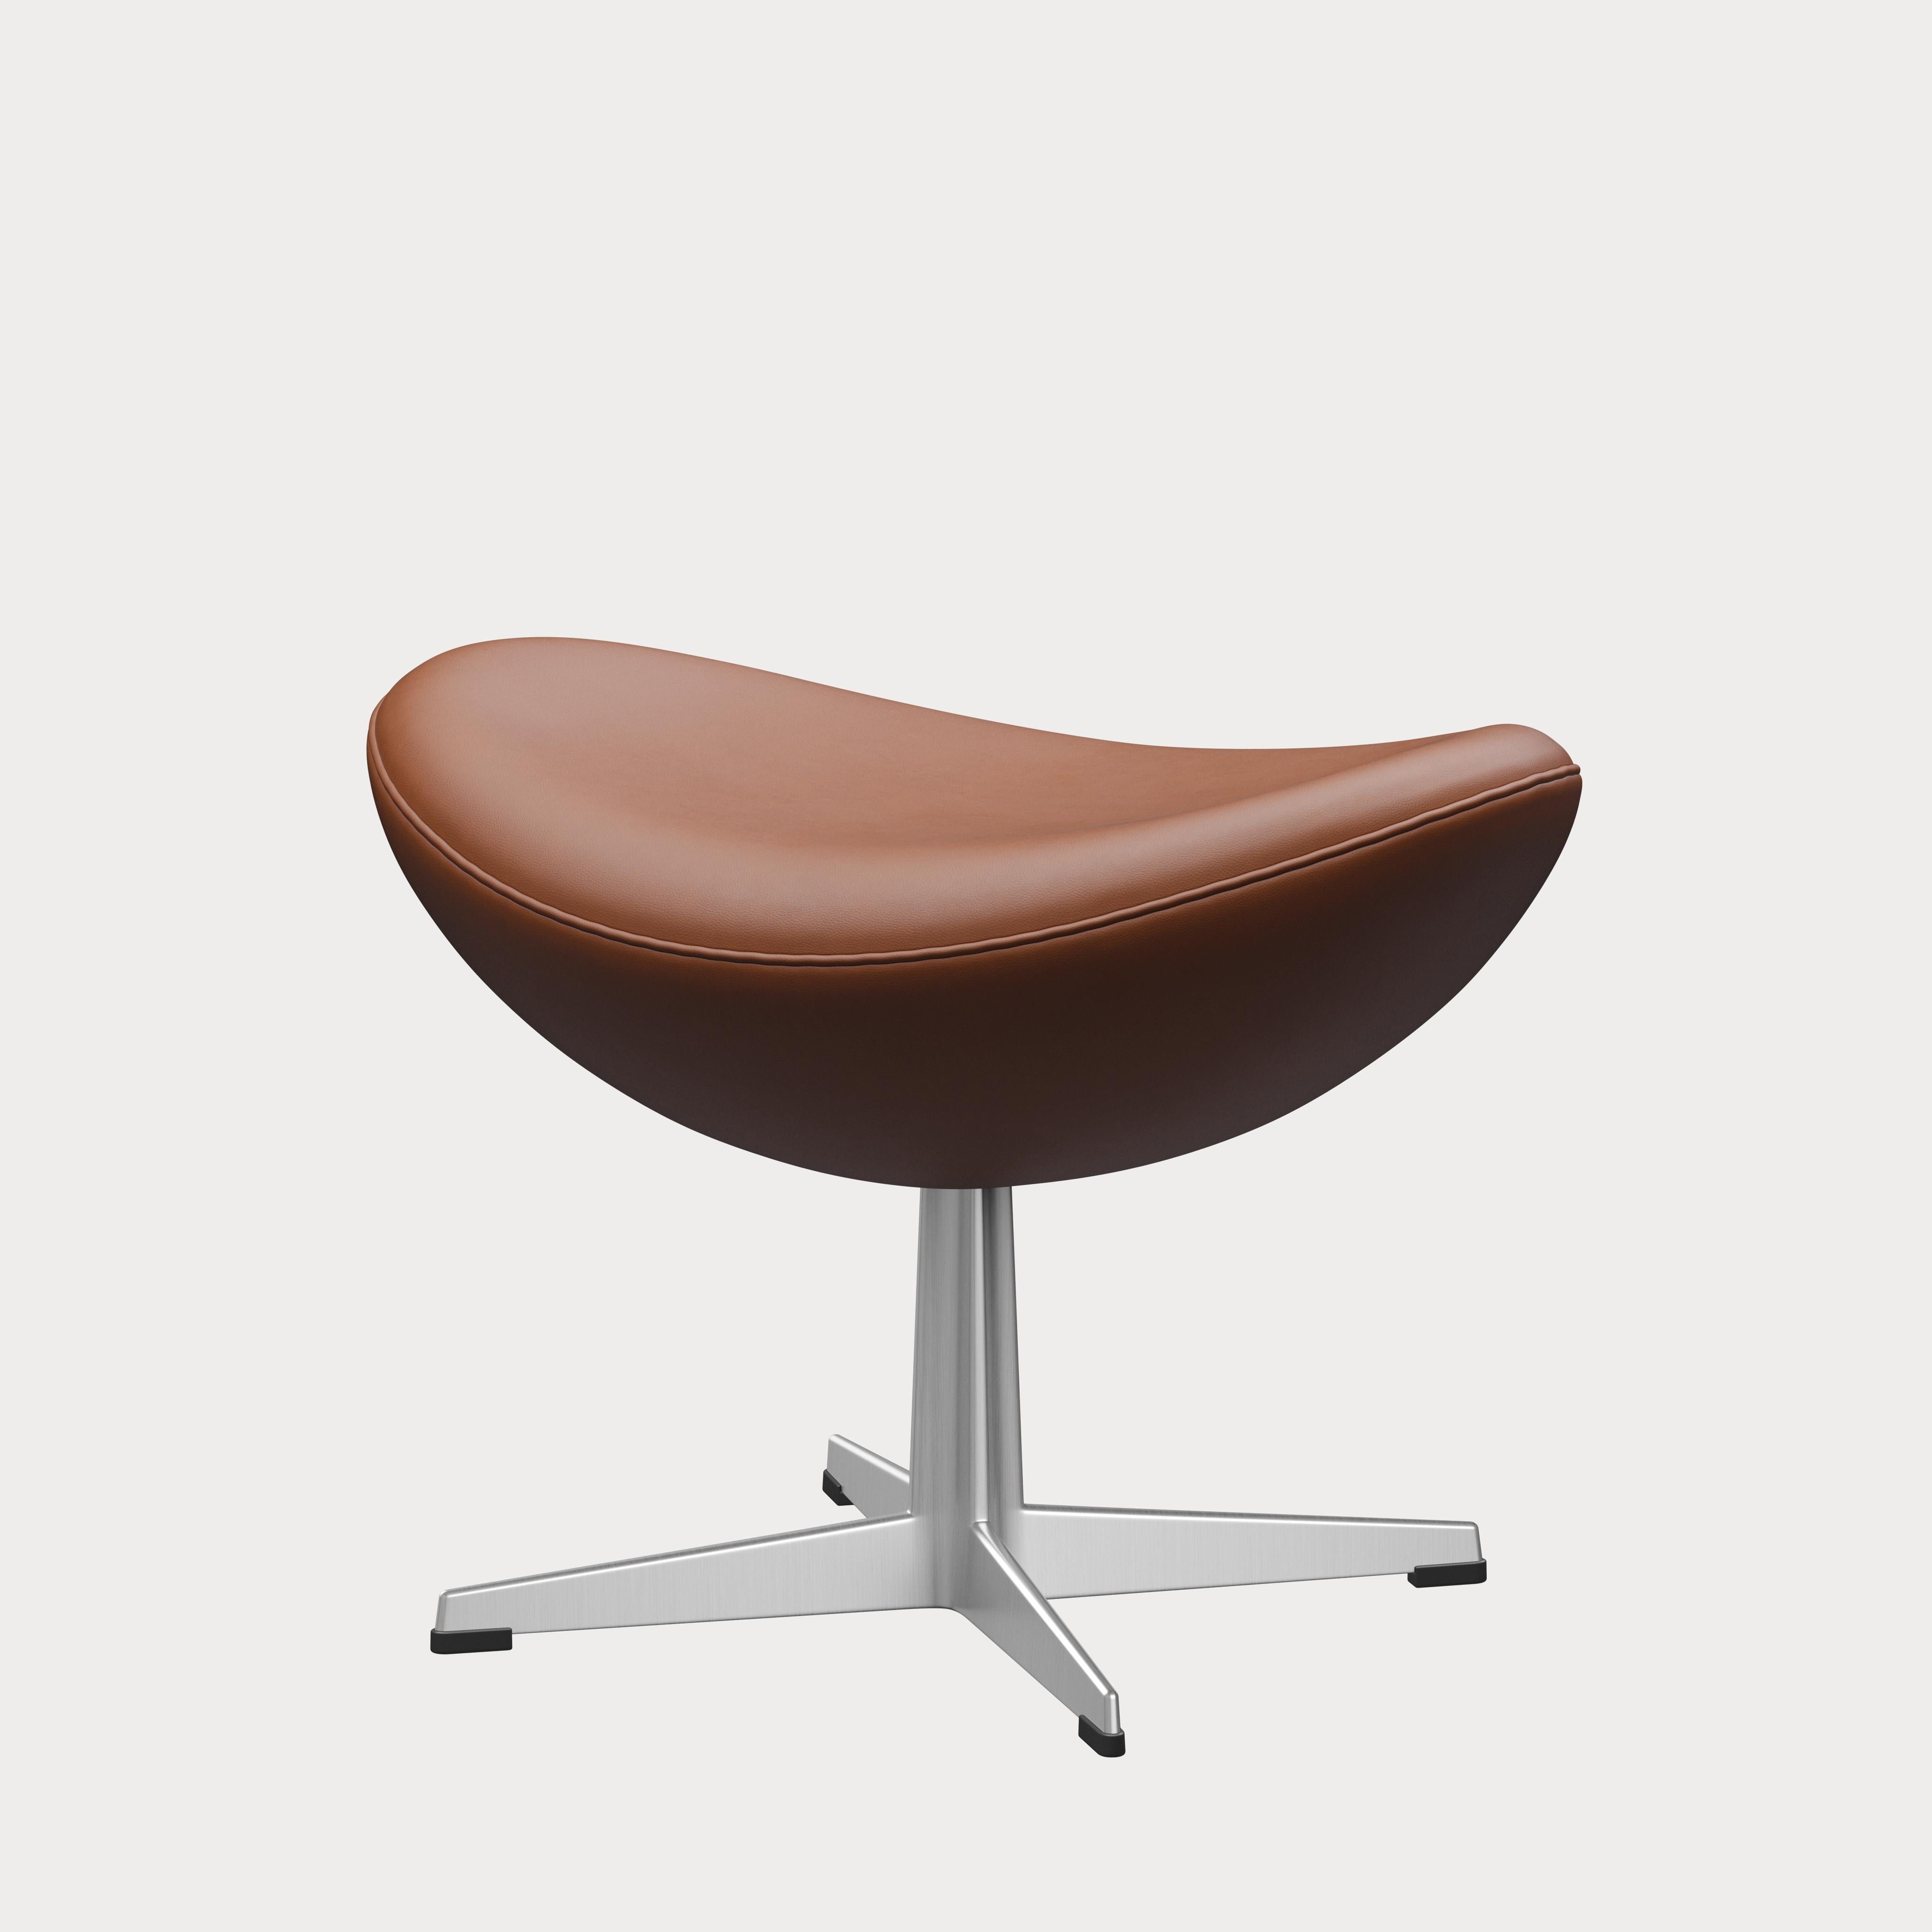 Arne Jacobsen 'Egg' Footstool for Fritz Hansen in Leather Upholstery (Cat. 3) For Sale 6